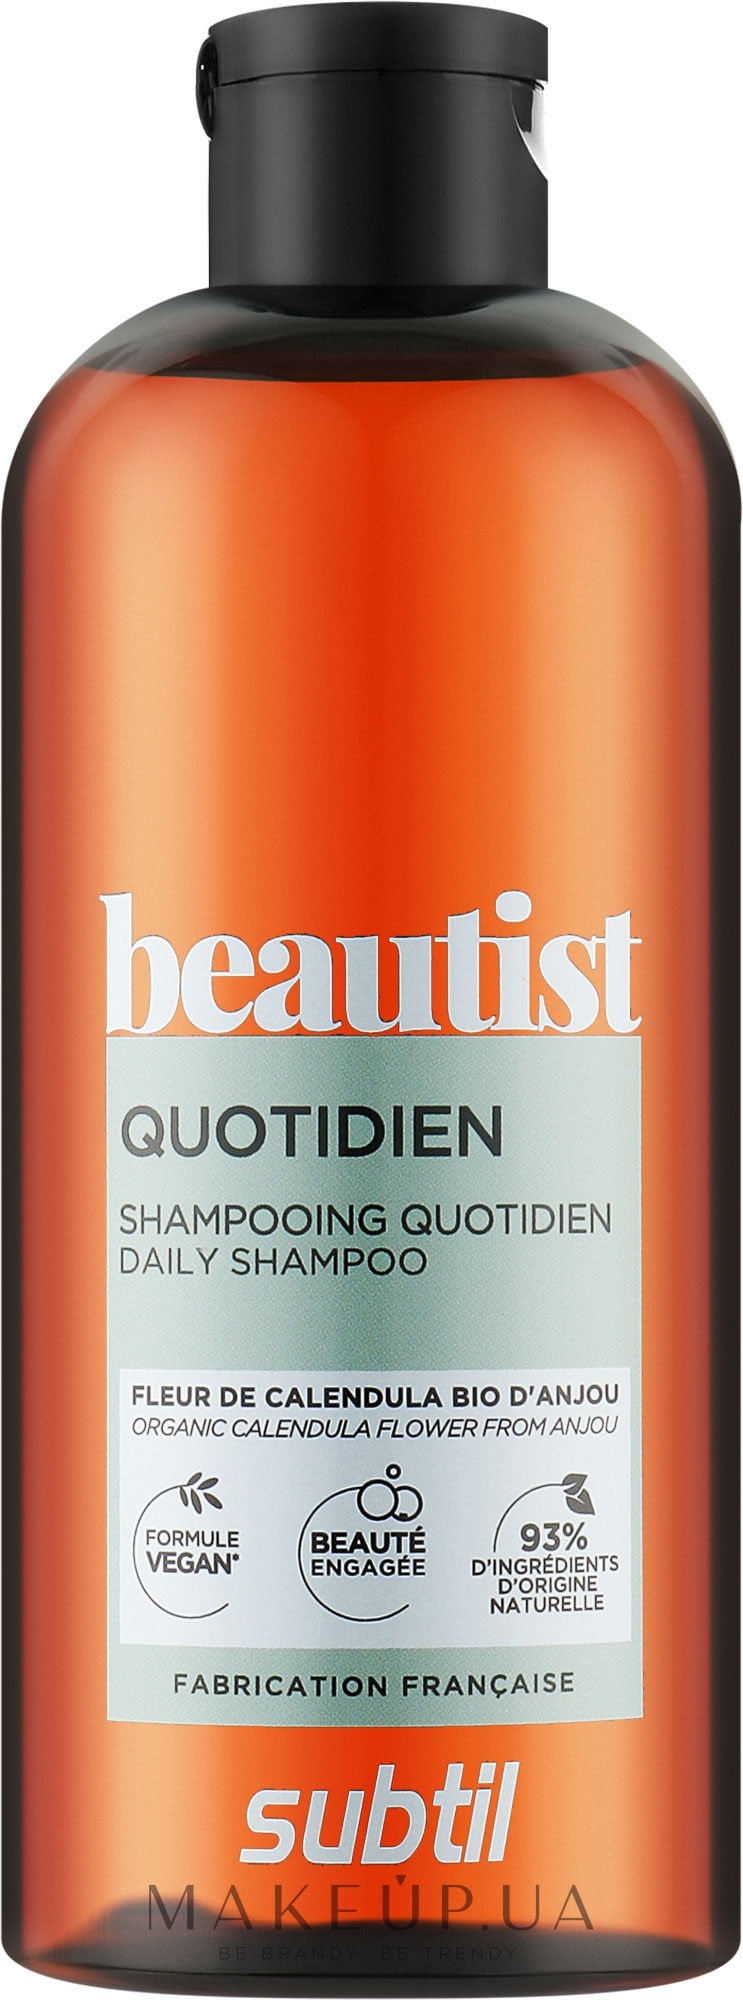 Ежедневный шампунь для волос - Laboratoire Ducastel Subtil Beautist Daily Shampoo — фото 300ml